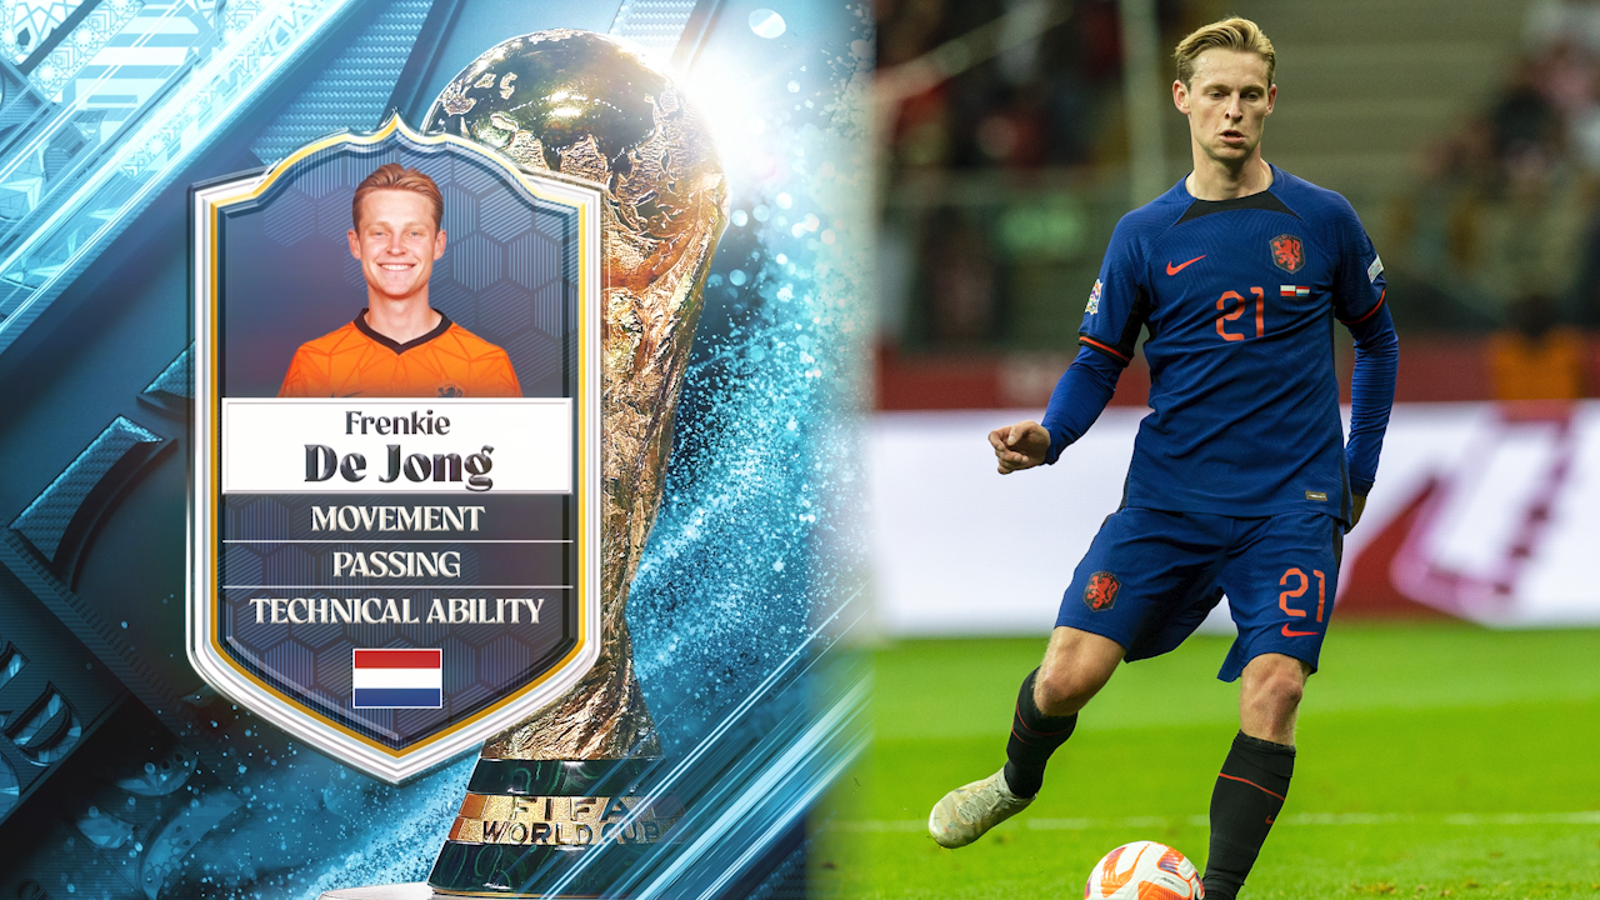 De Jong will lead the Dutch